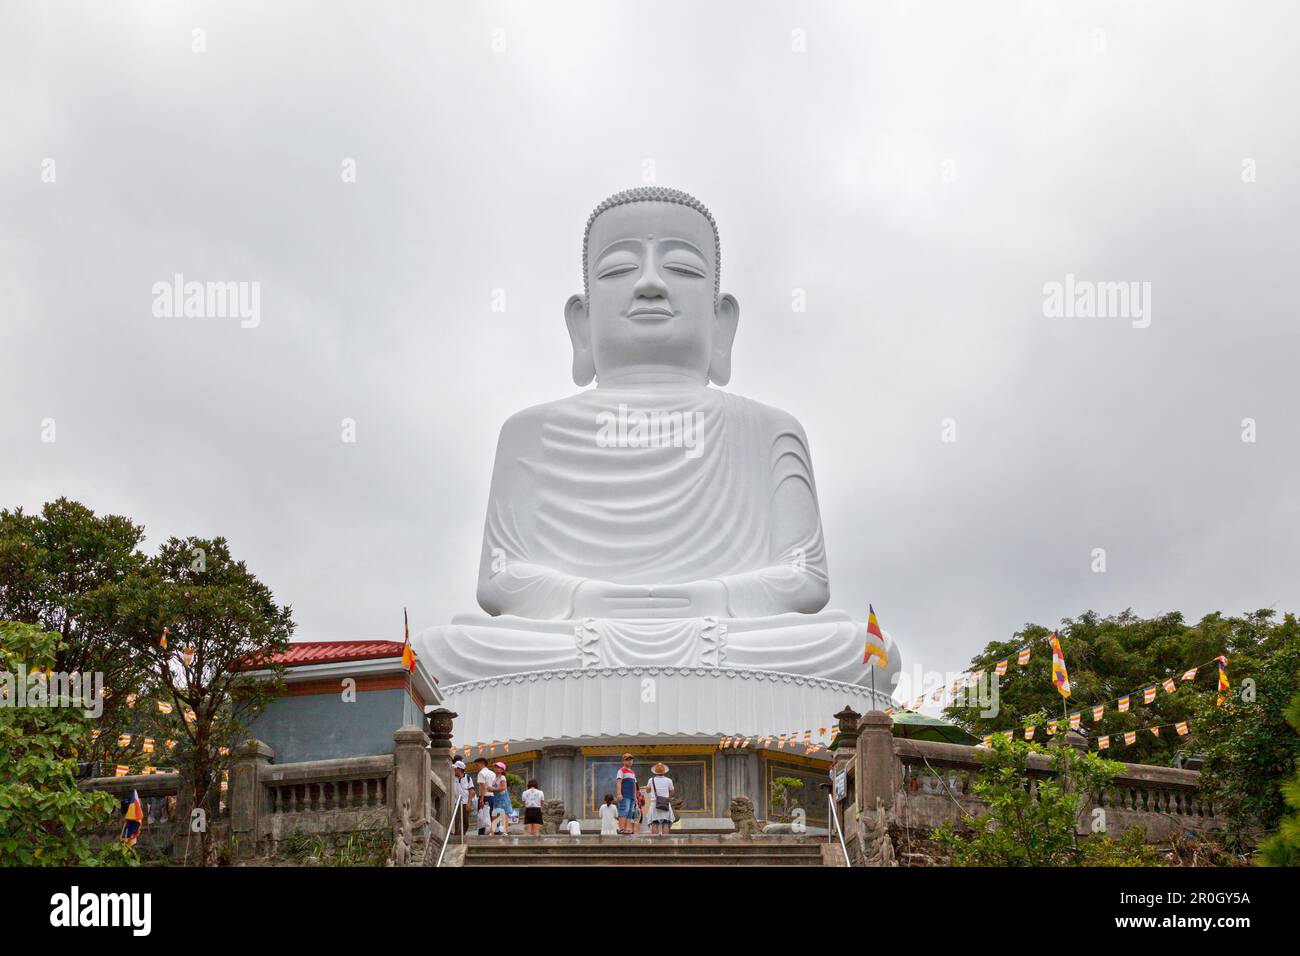 Collines de Bà Nà, Vietnam - 22 août 2018 : statue de Bouddha blanc à la Pagode de l'Ung de Linh, dans les collines de Bà Nà, au Vietnam. Banque D'Images